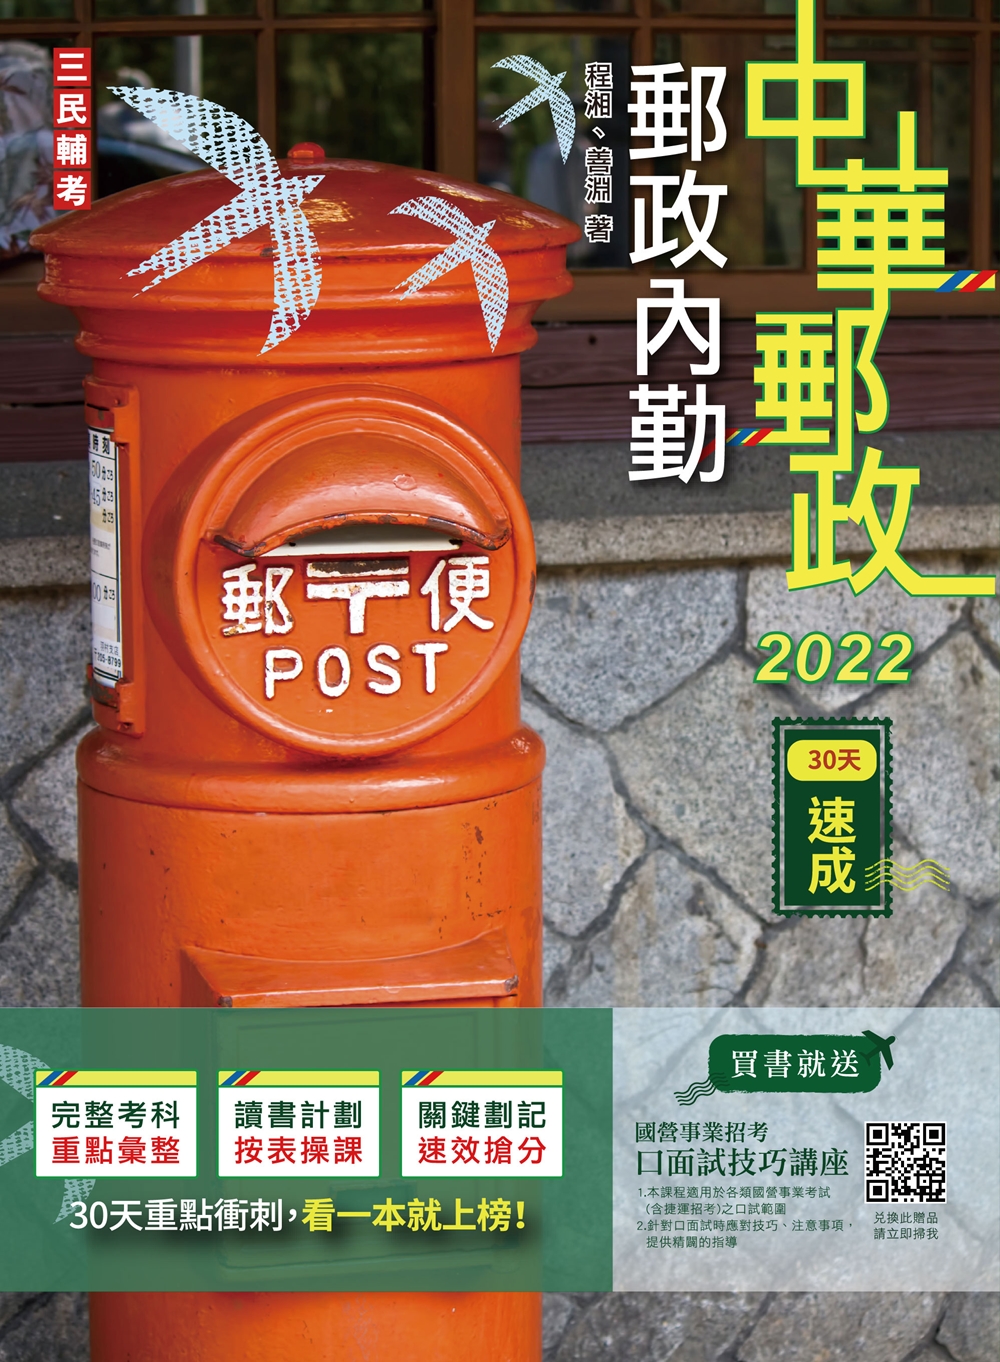 商品圖片 2022郵政內勤30天速成(中華郵政專業職二內勤)